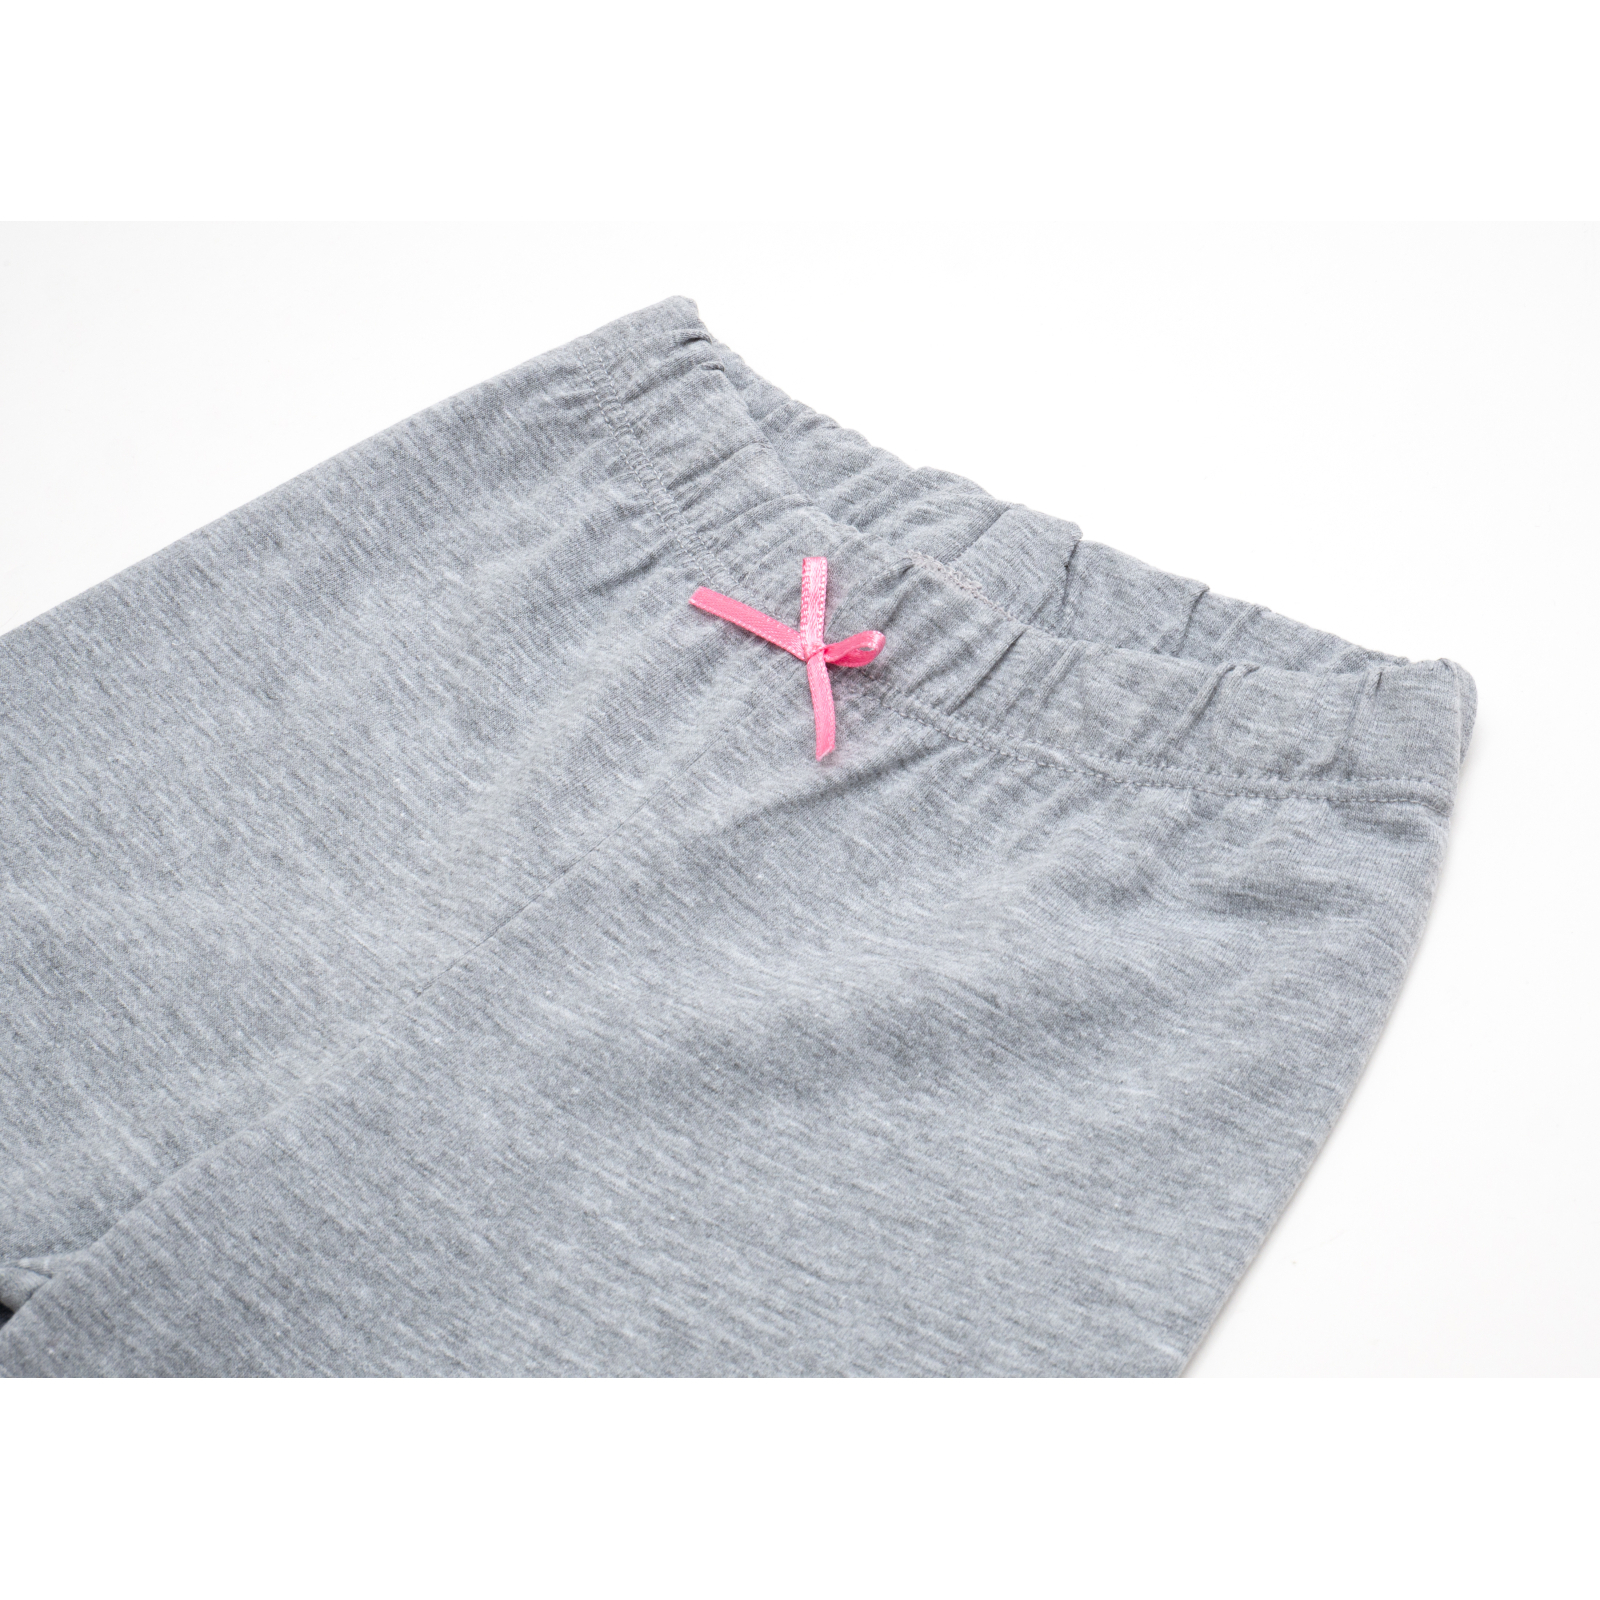 Пижама Matilda со звездочками (7167-116G-pink) изображение 8